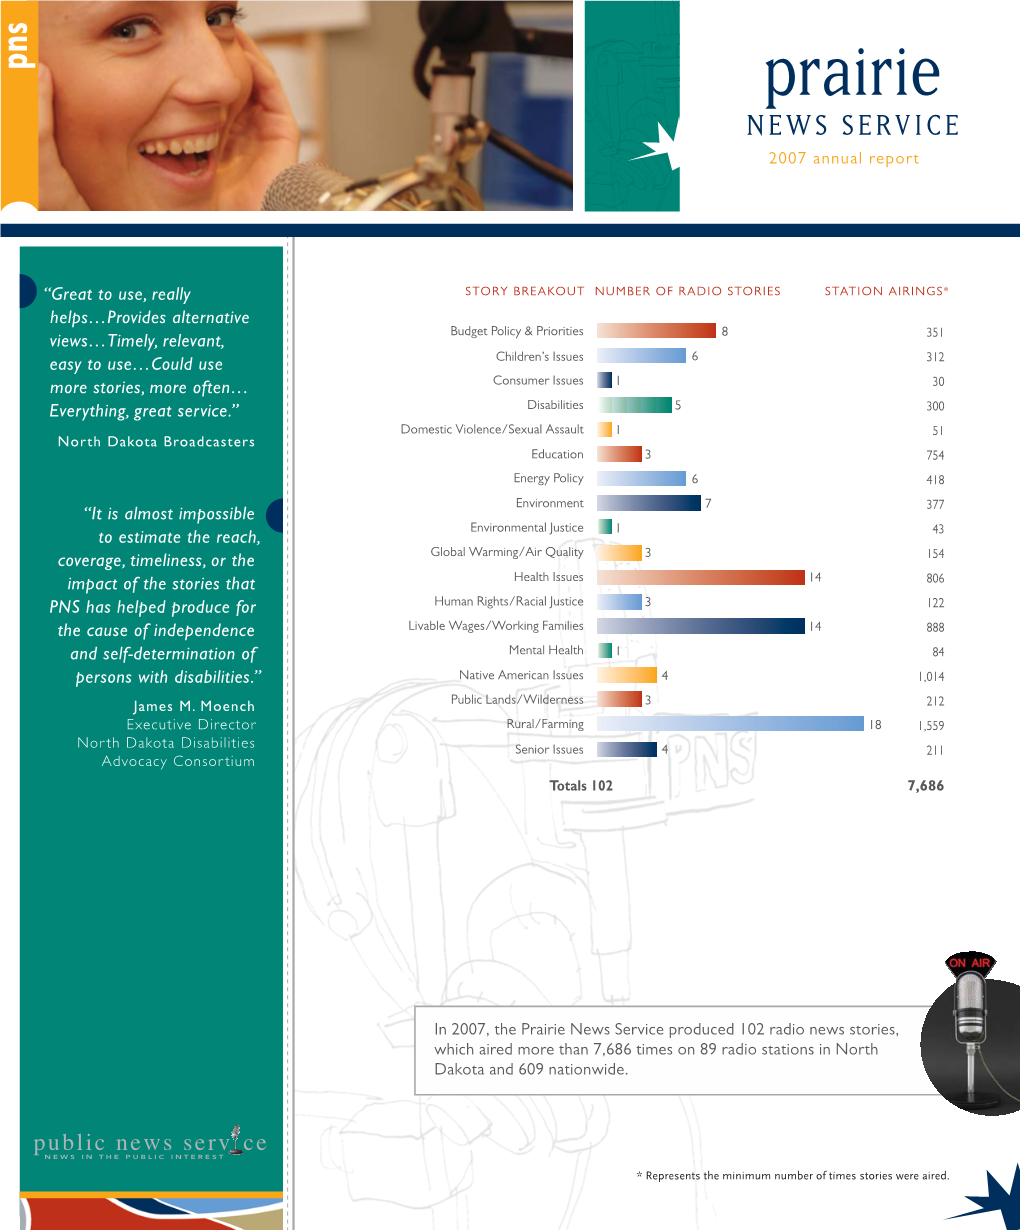 Prairie NEWS SERVICE 2007 Annual Report